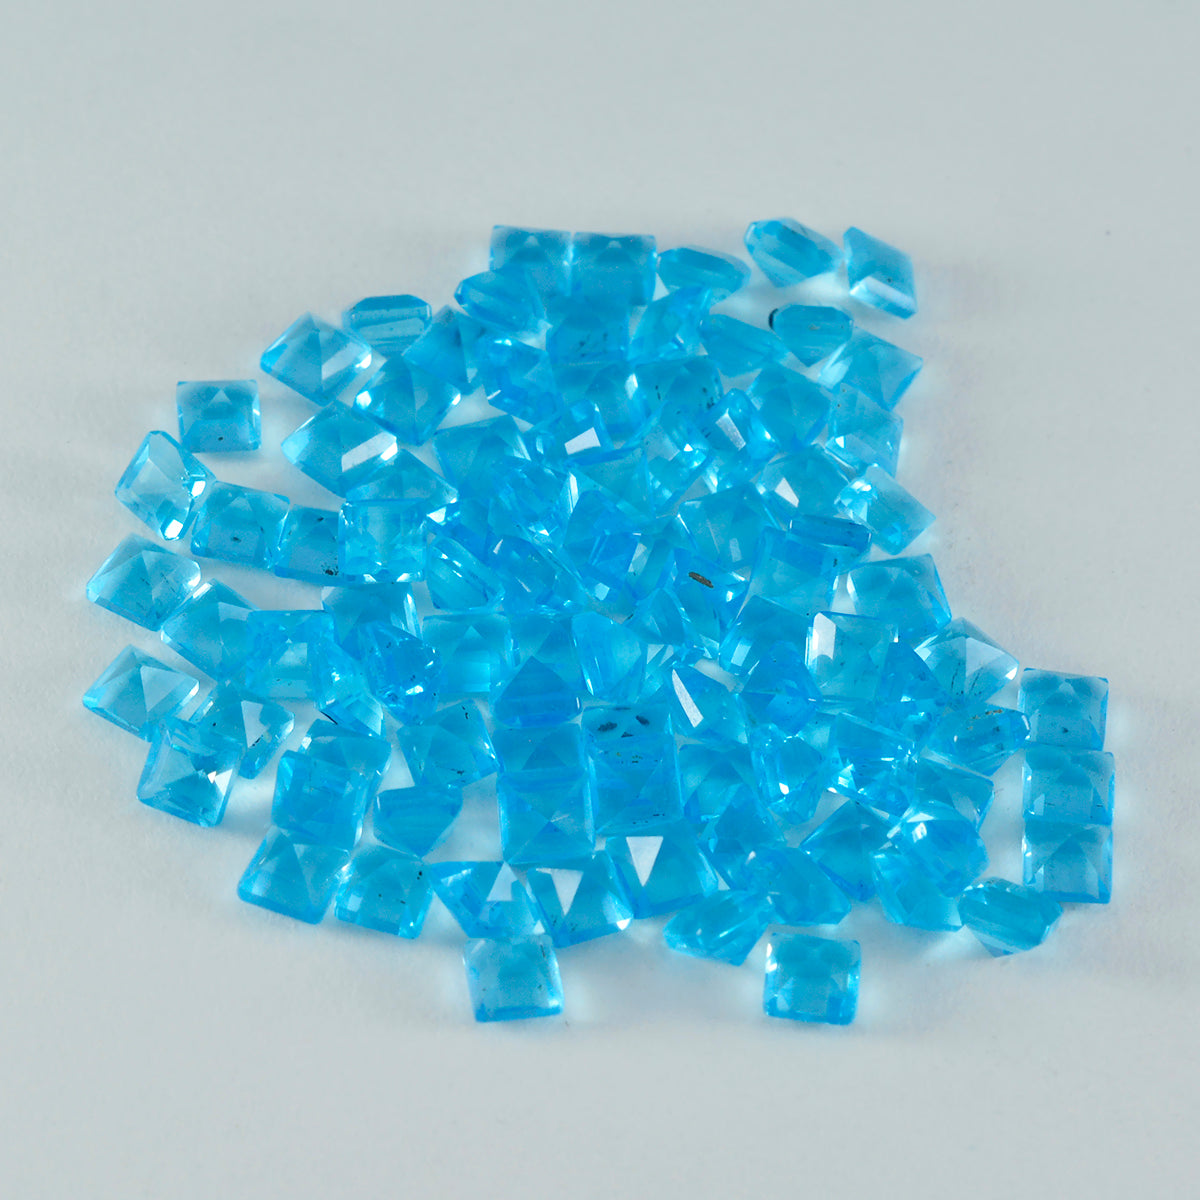 Riyogems 1 Stück blauer Topas, CZ, facettiert, 4 x 4 mm, quadratische Form, schöne Qualität, loser Edelstein